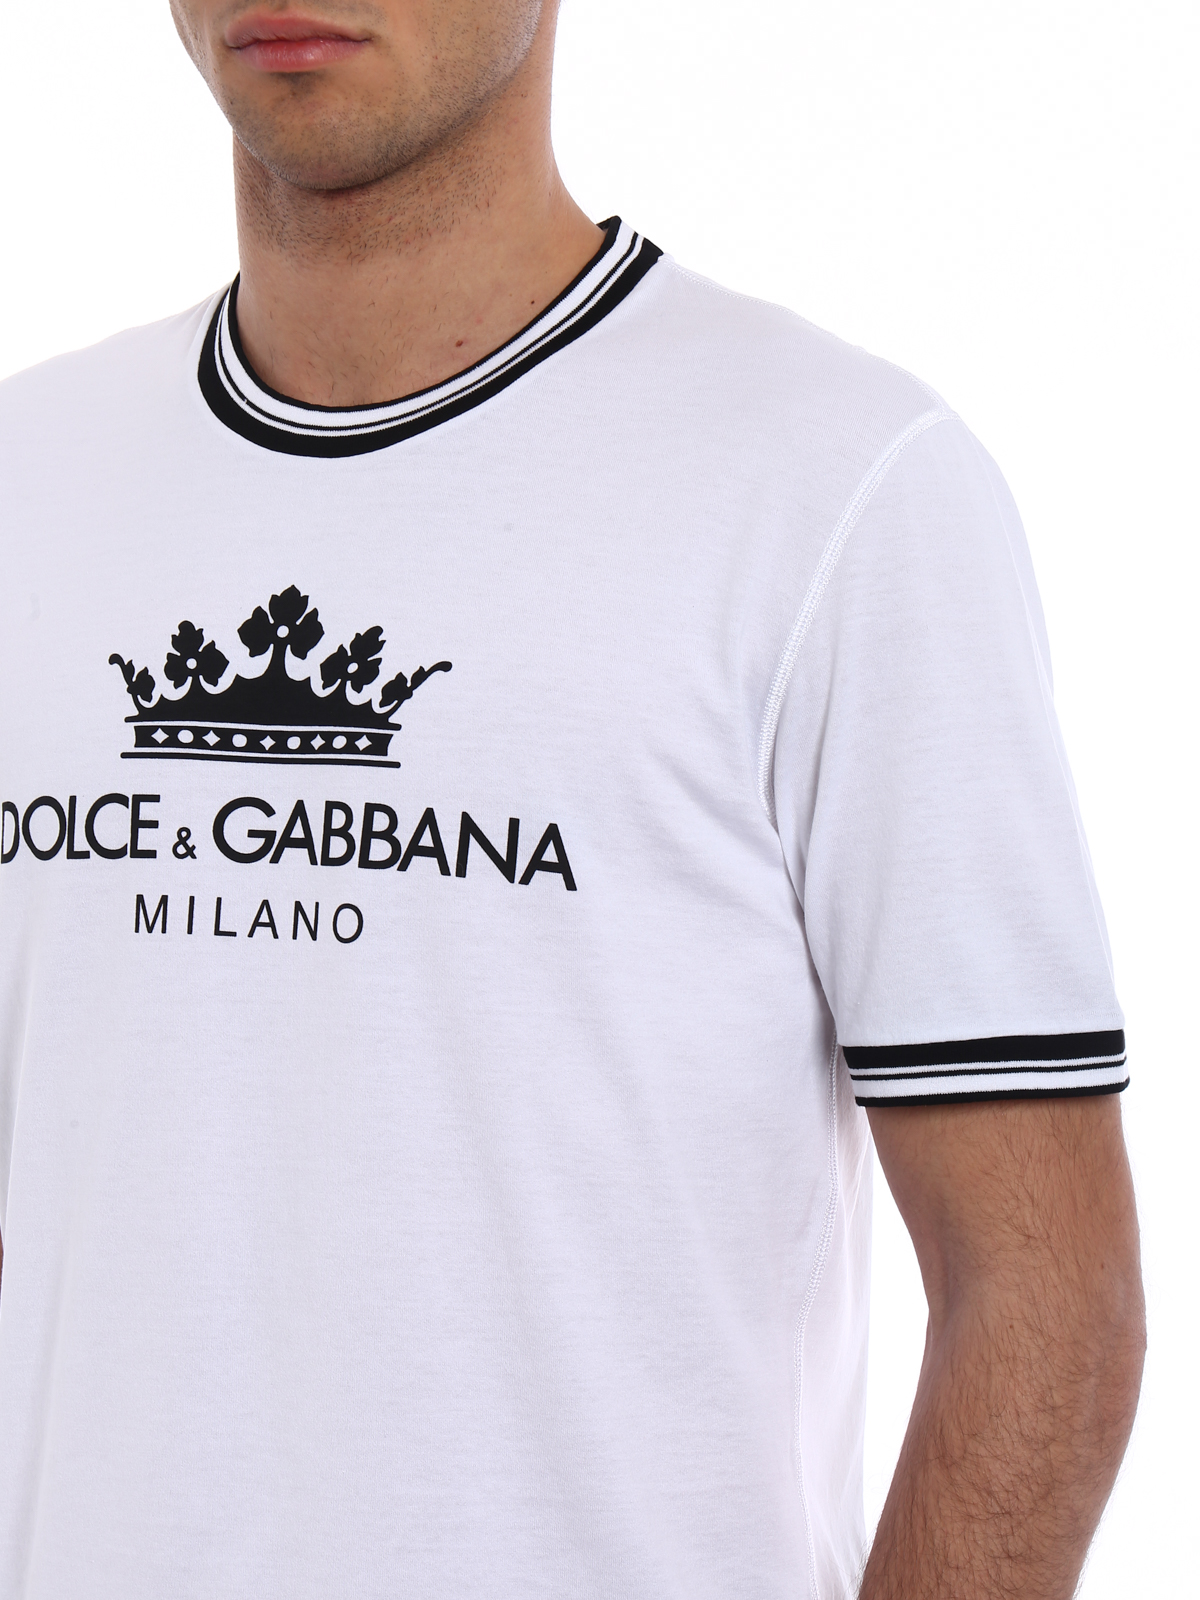 dolce and gabbana t shirts cheap